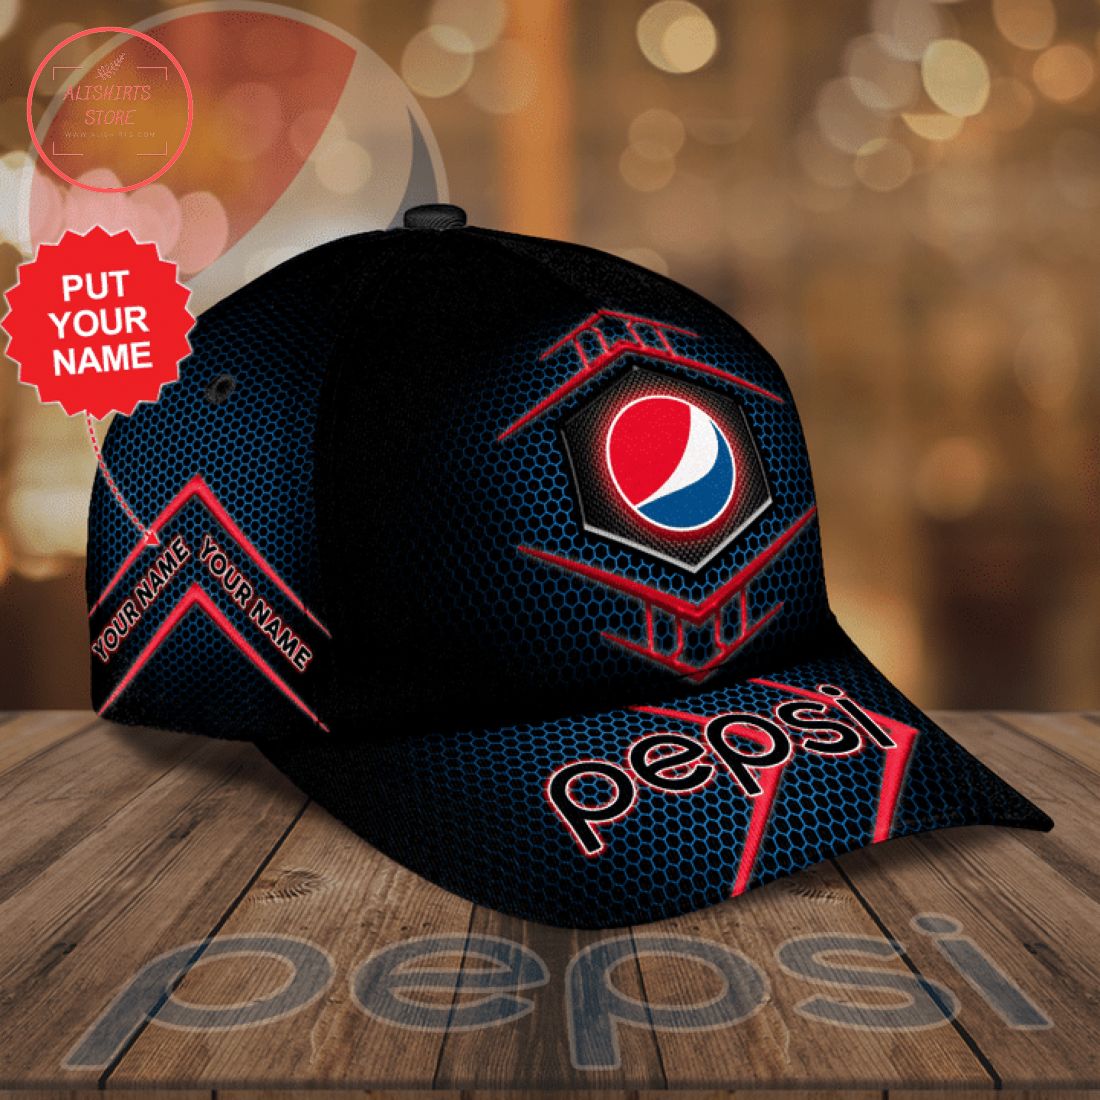 Personalized Pepsi Hat Cap